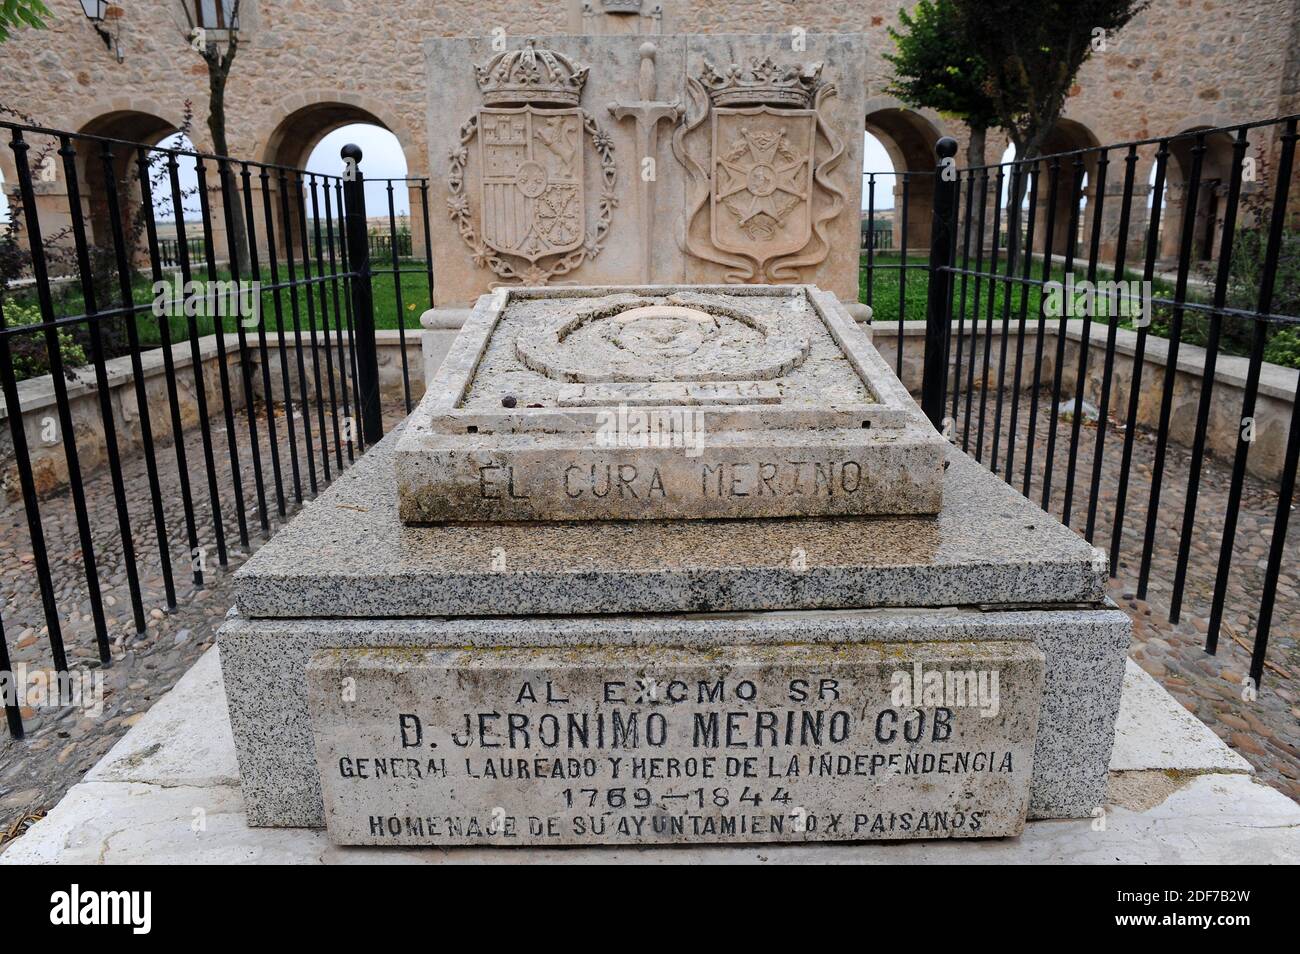 Lerma, tumba de Cura Merino (héroe de la independencia). Provincia de Burgos, Castilla y León, España. Foto de stock